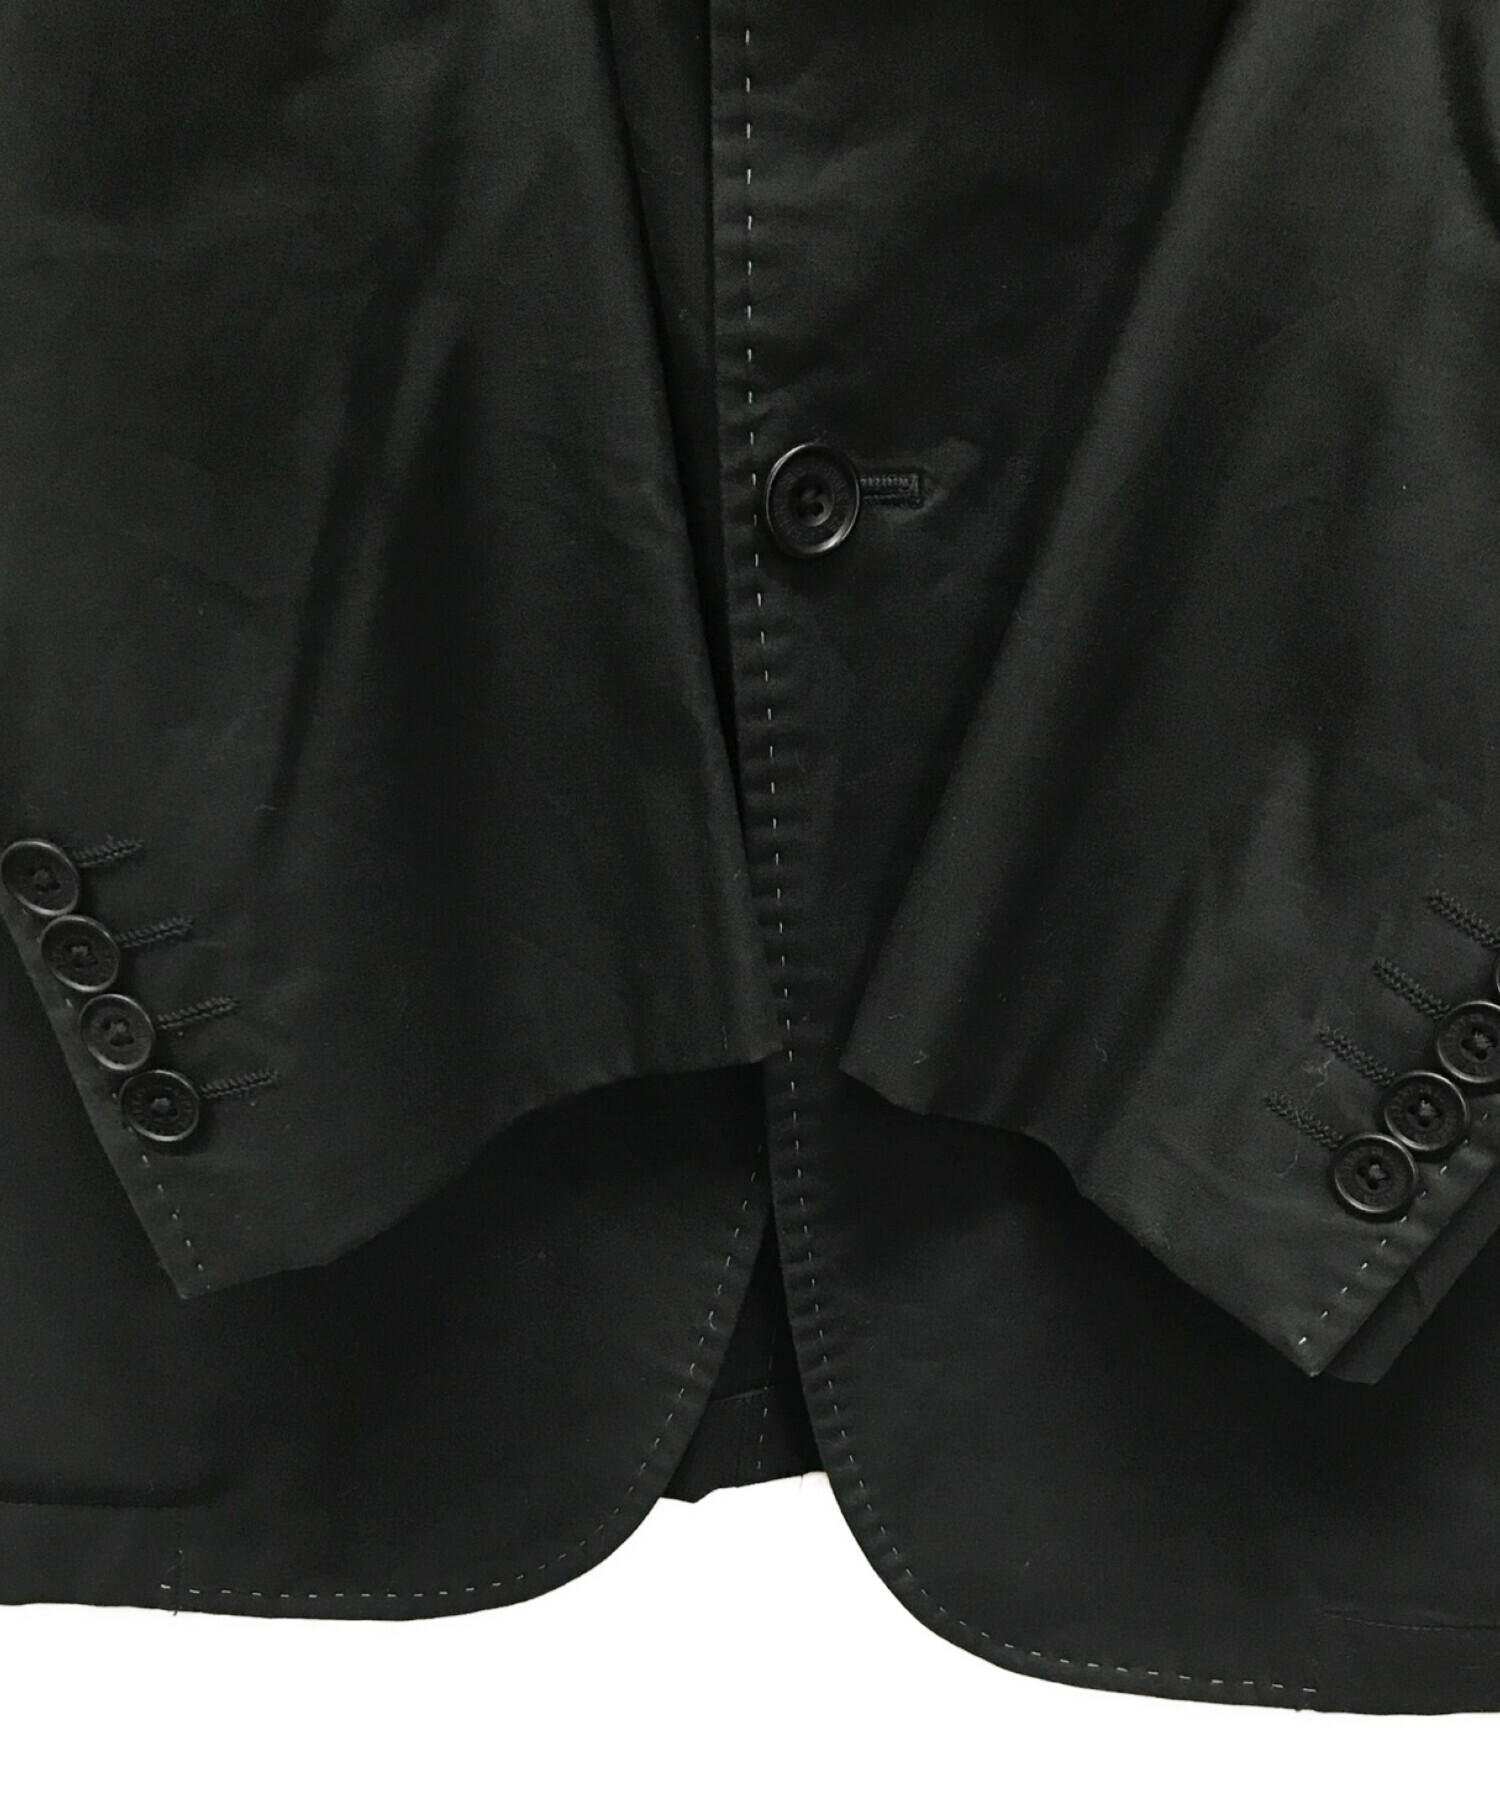 BURBERRY BLACK LABEL (バーバリーブラックレーベル) テーラードジャケット ブラック サイズ:L